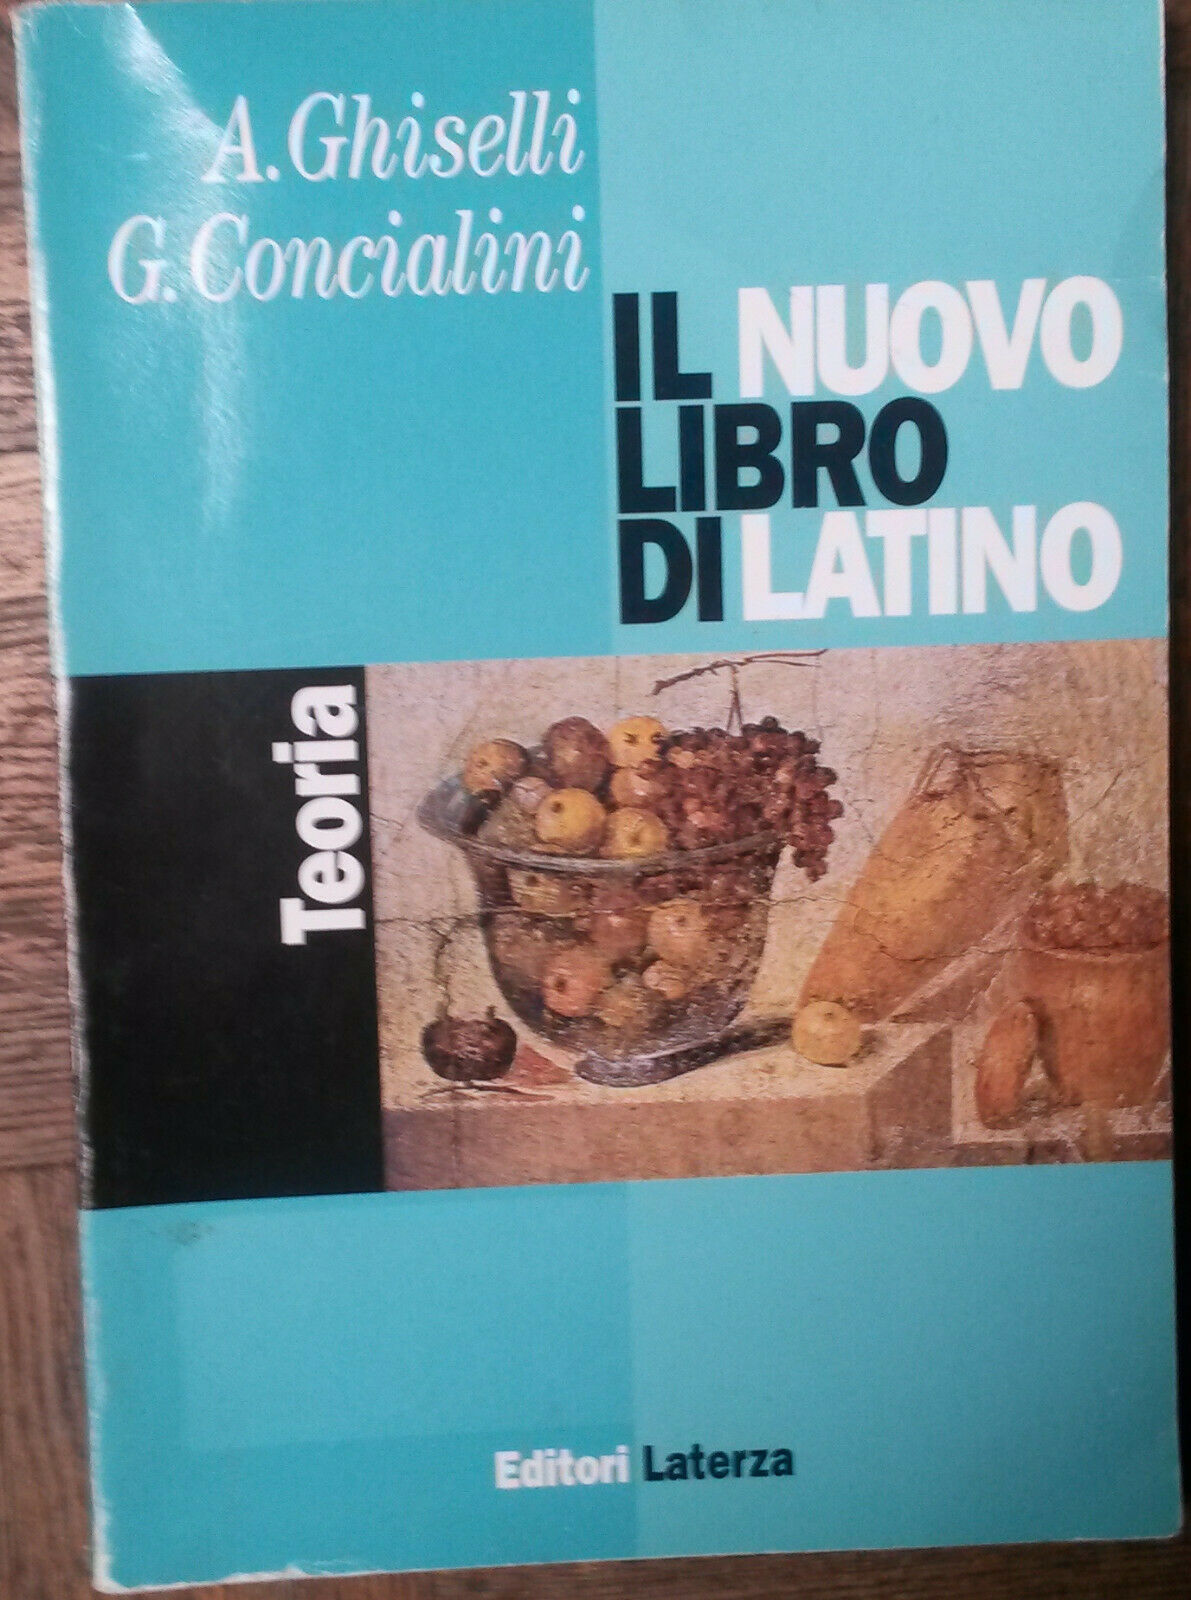 Il nuovo libro di latino - A Ghiselli, C. Concialini - Editori Laterza,1998 - R